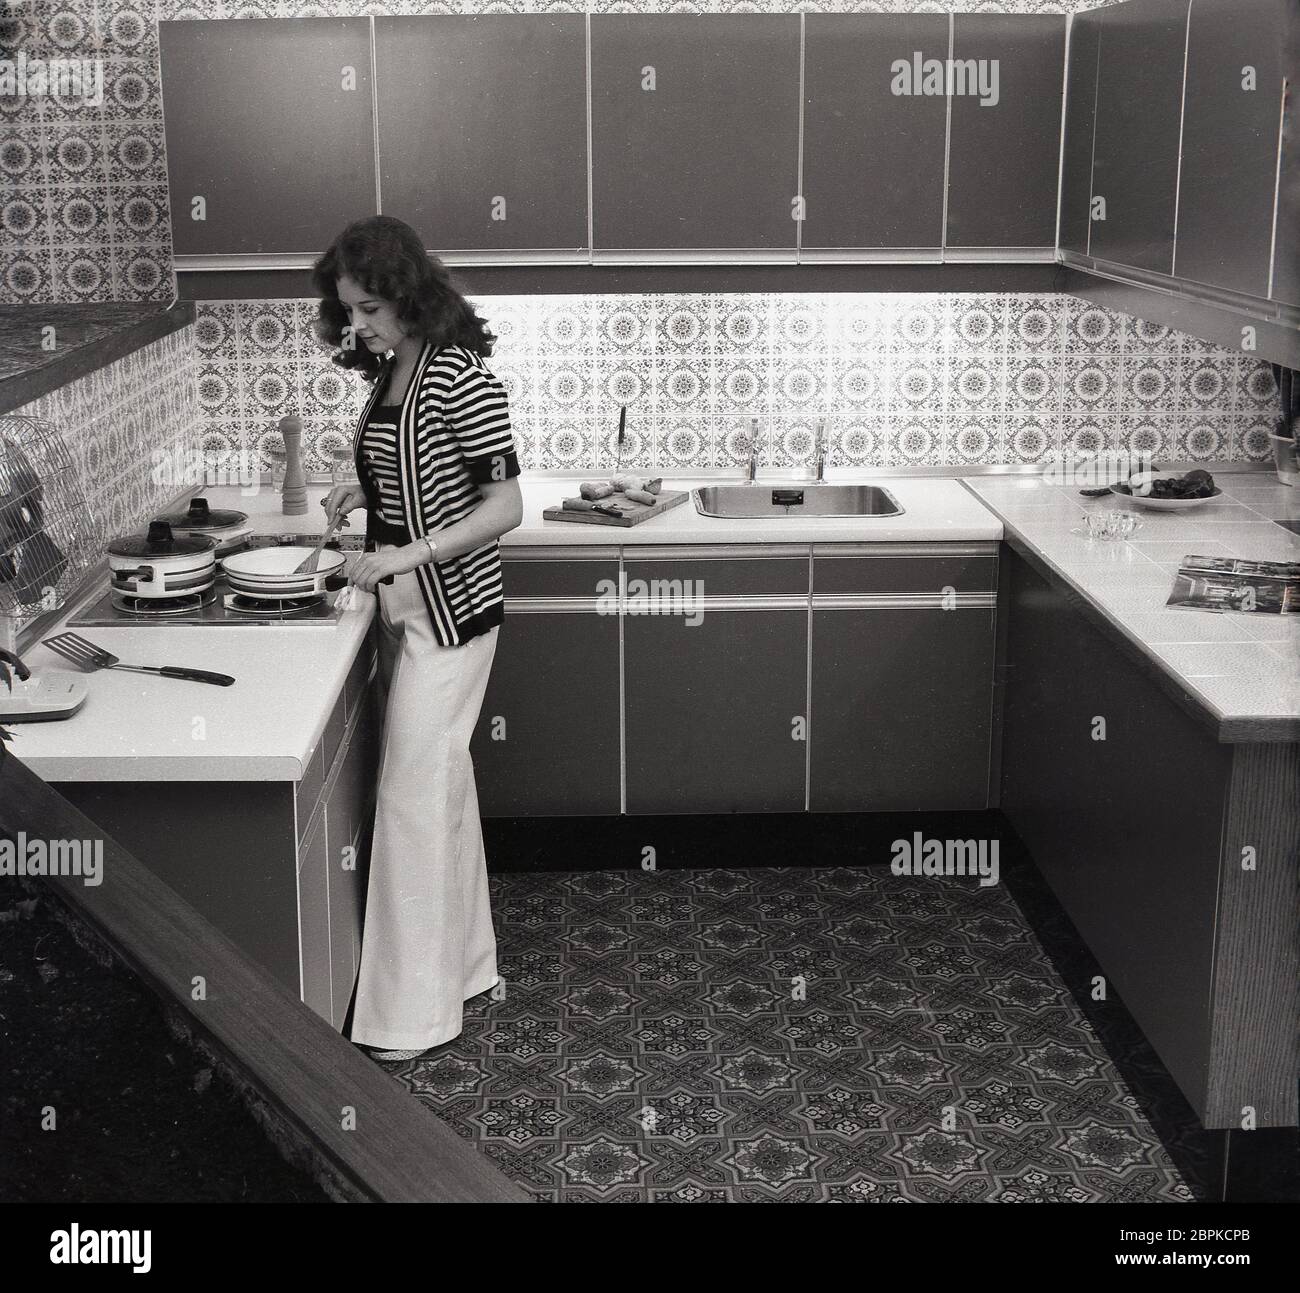 Anni '70, una donna elegante e di stile in un top stripy e pantaloni svasati che cucina in una cucina compatta e moderna dell'epoca, con unità da cucina in laminato e countertops, splashbacks e pavimento a motivi geometrici, Inghilterra, Regno Unito. Foto Stock